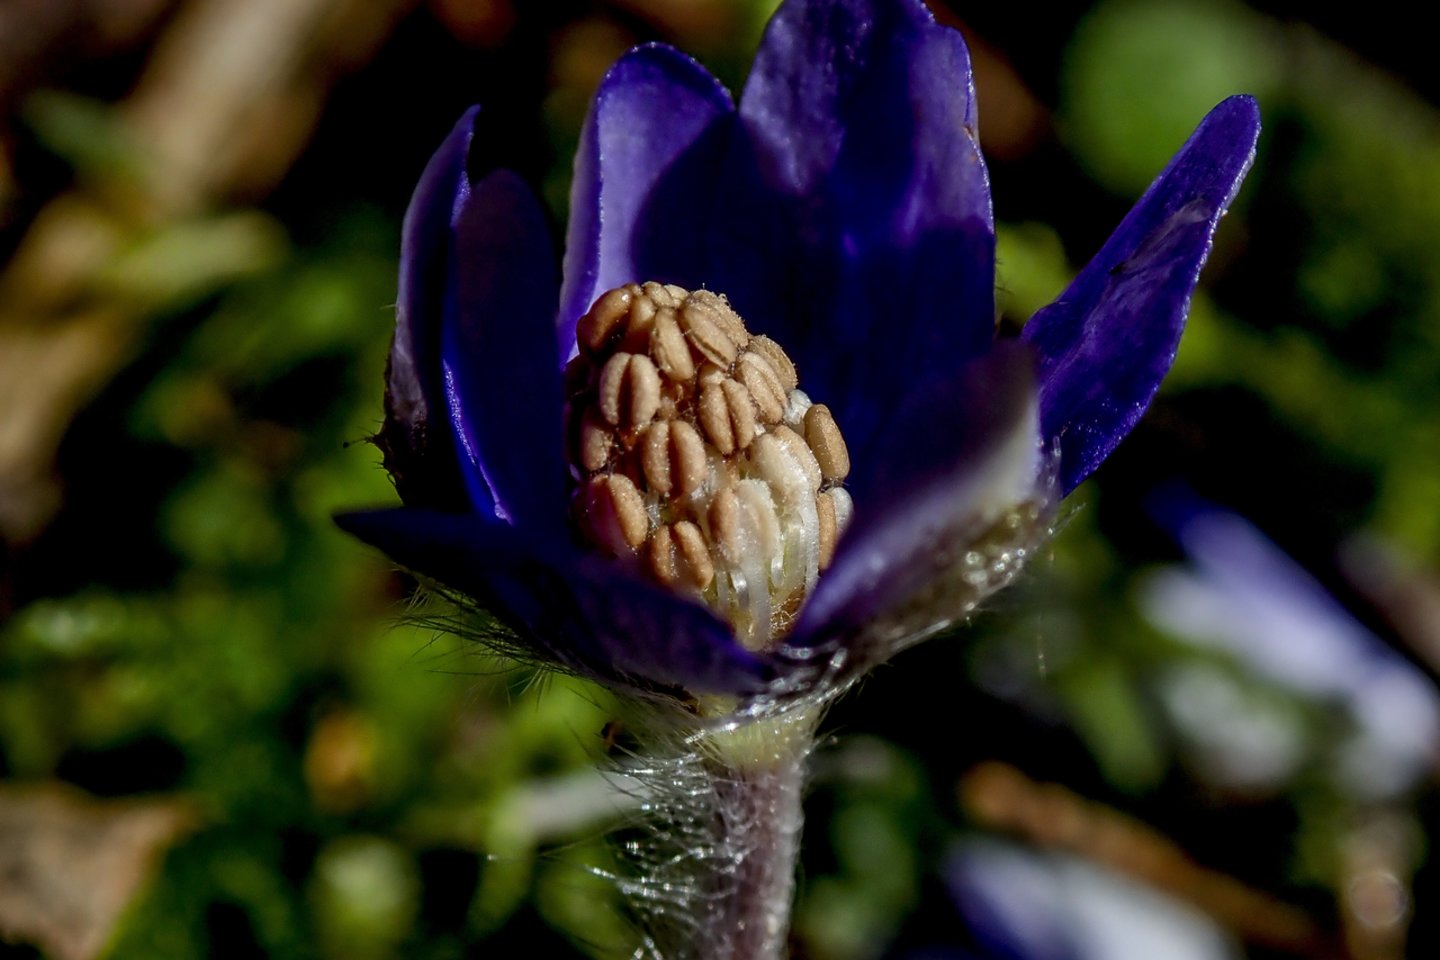 Plūstelėjus pavasariškai šilumai iš žiemos miego pabudo vienos gražiausių ankstyvojo pavasario gėlių.<br> V.Ščiavinsko nuotr.